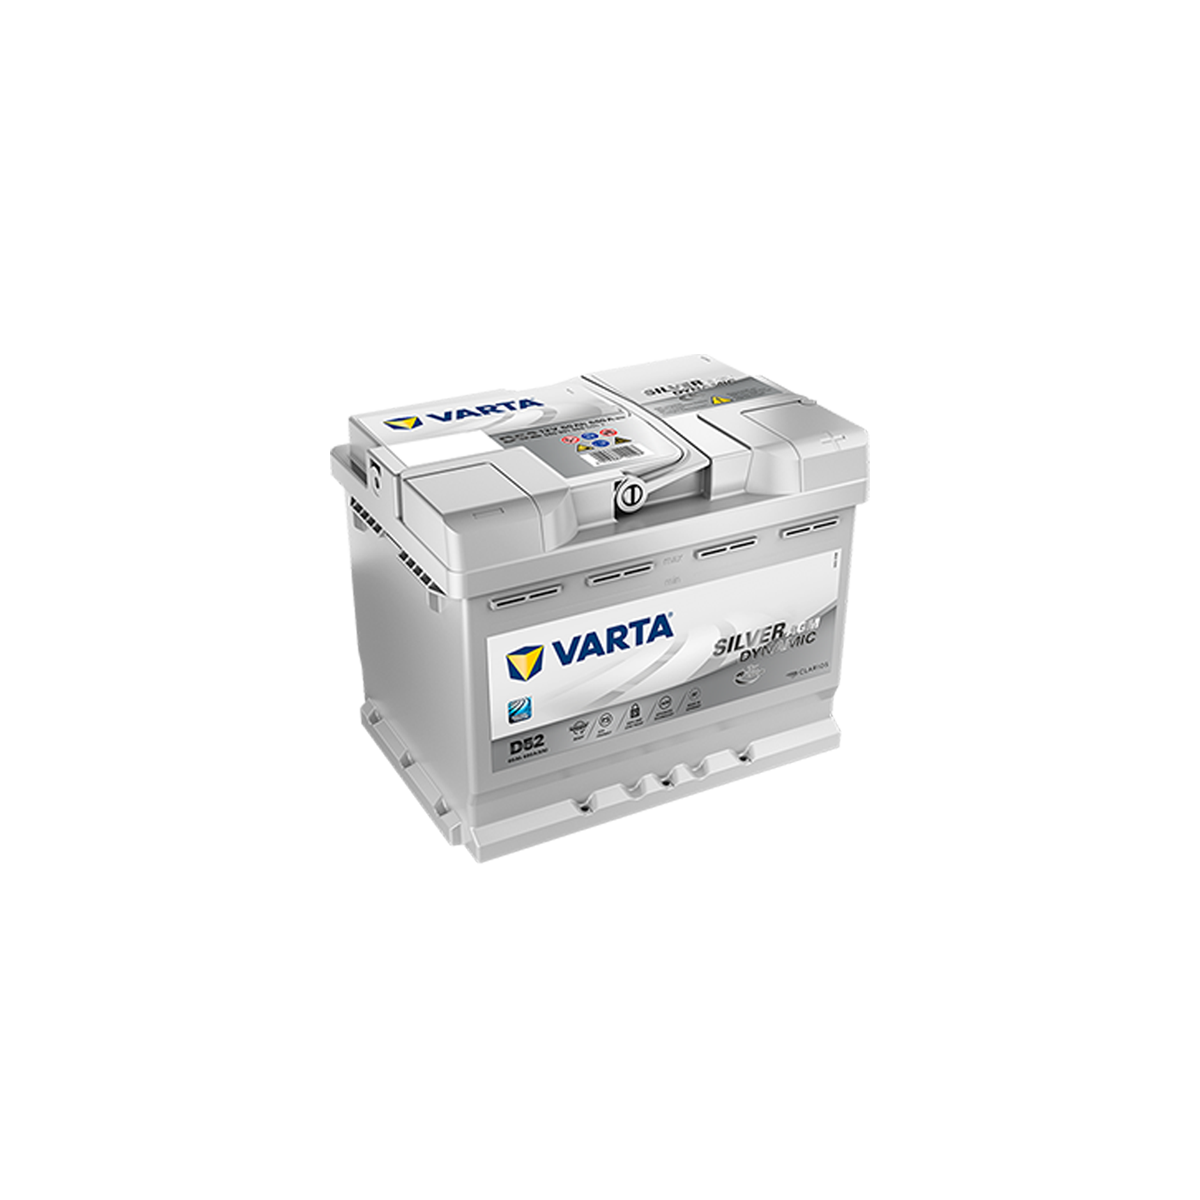 VARTA Battery Silver Dynamic 577.400.078 12V/77Ah